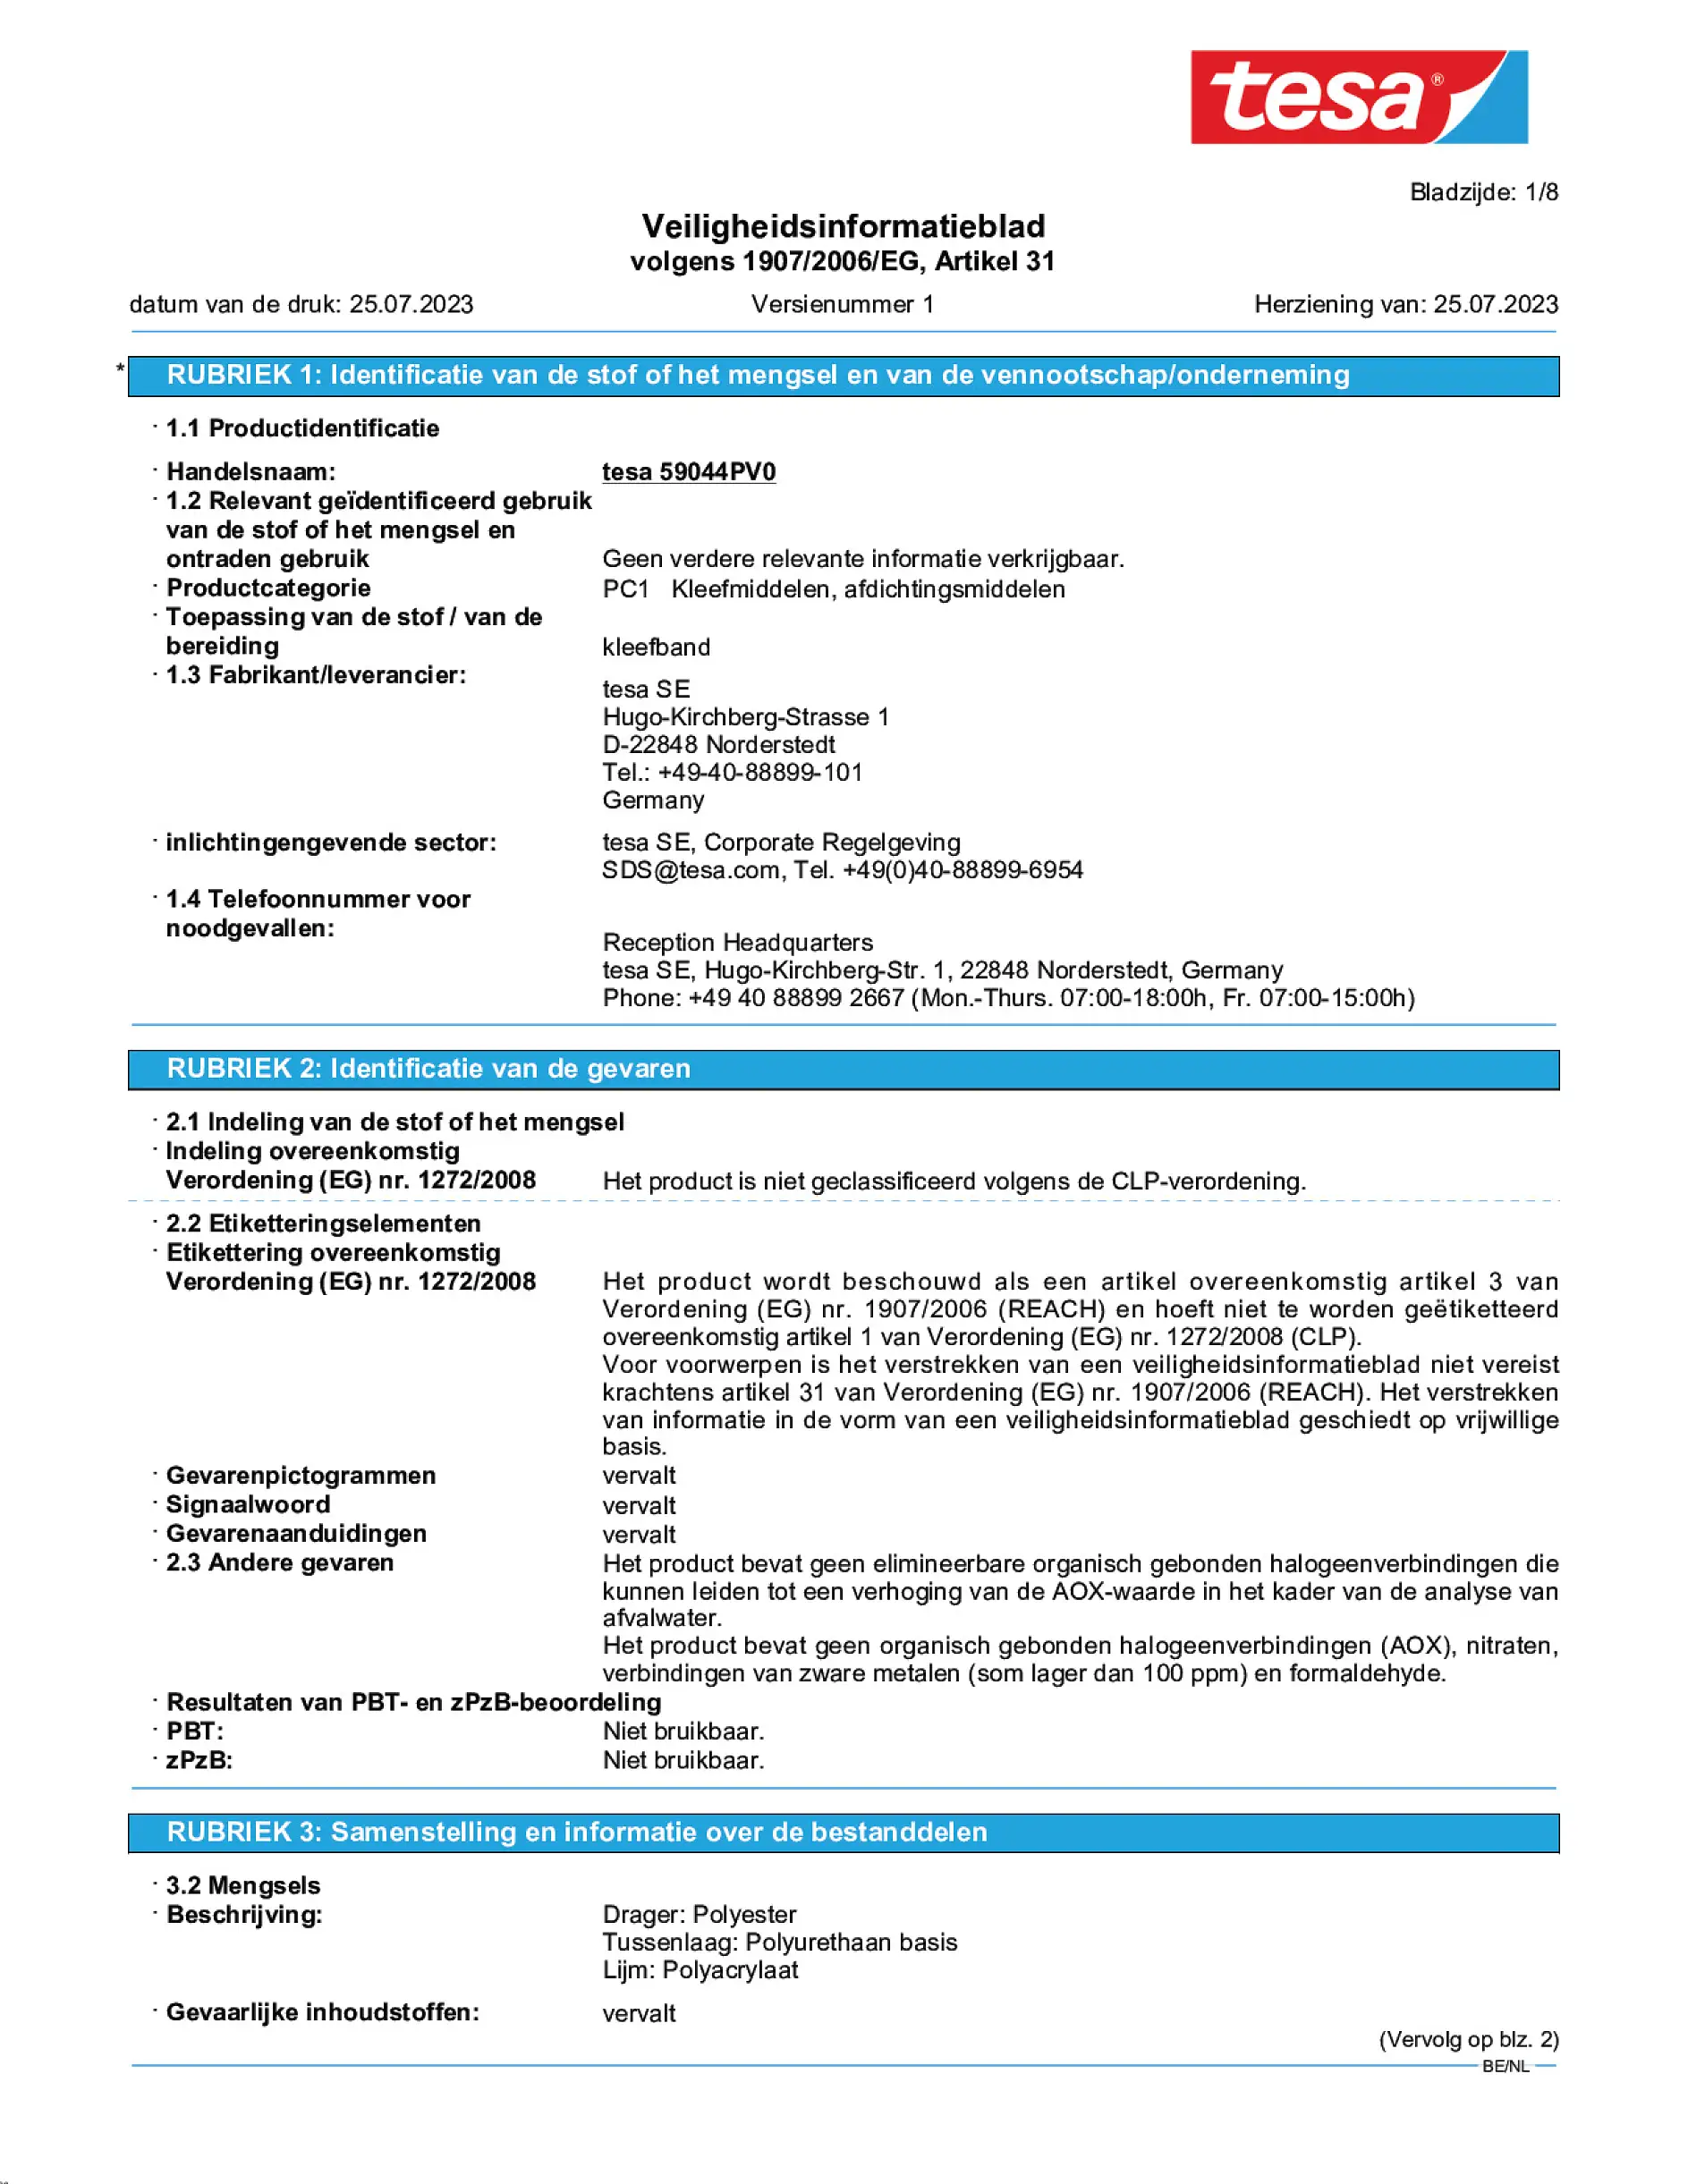 Safety data sheet_tesafilm® 59036_nl-BE_v1